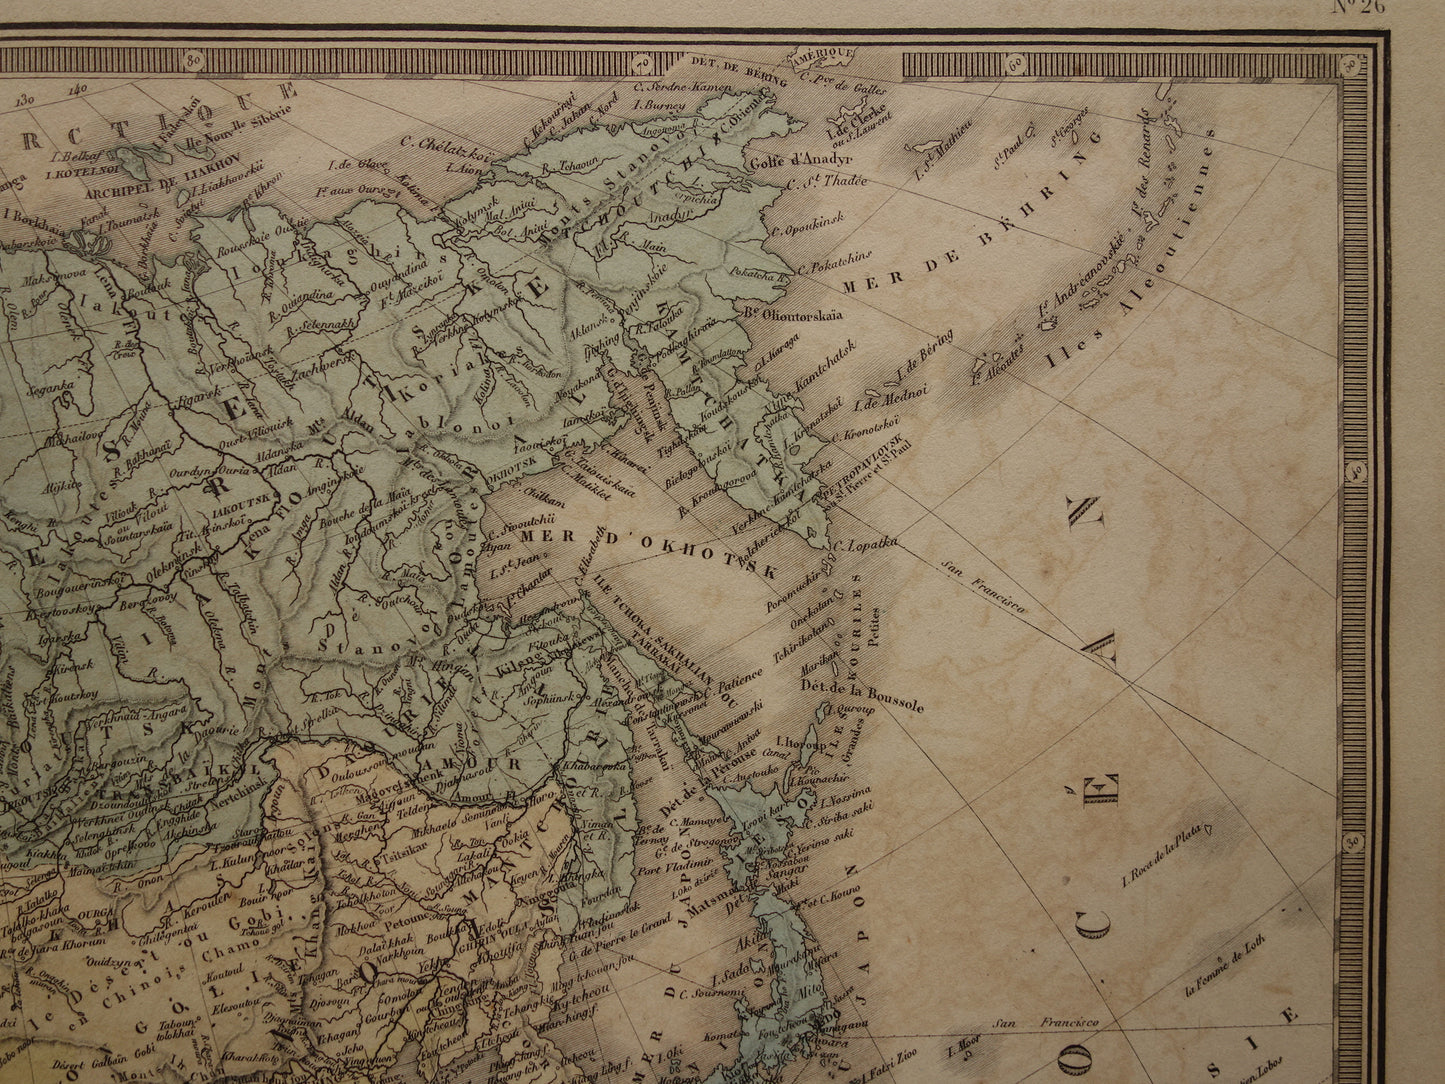 AZIË oude kaart uit 1876 originele antieke landkaart van continent Azië poster